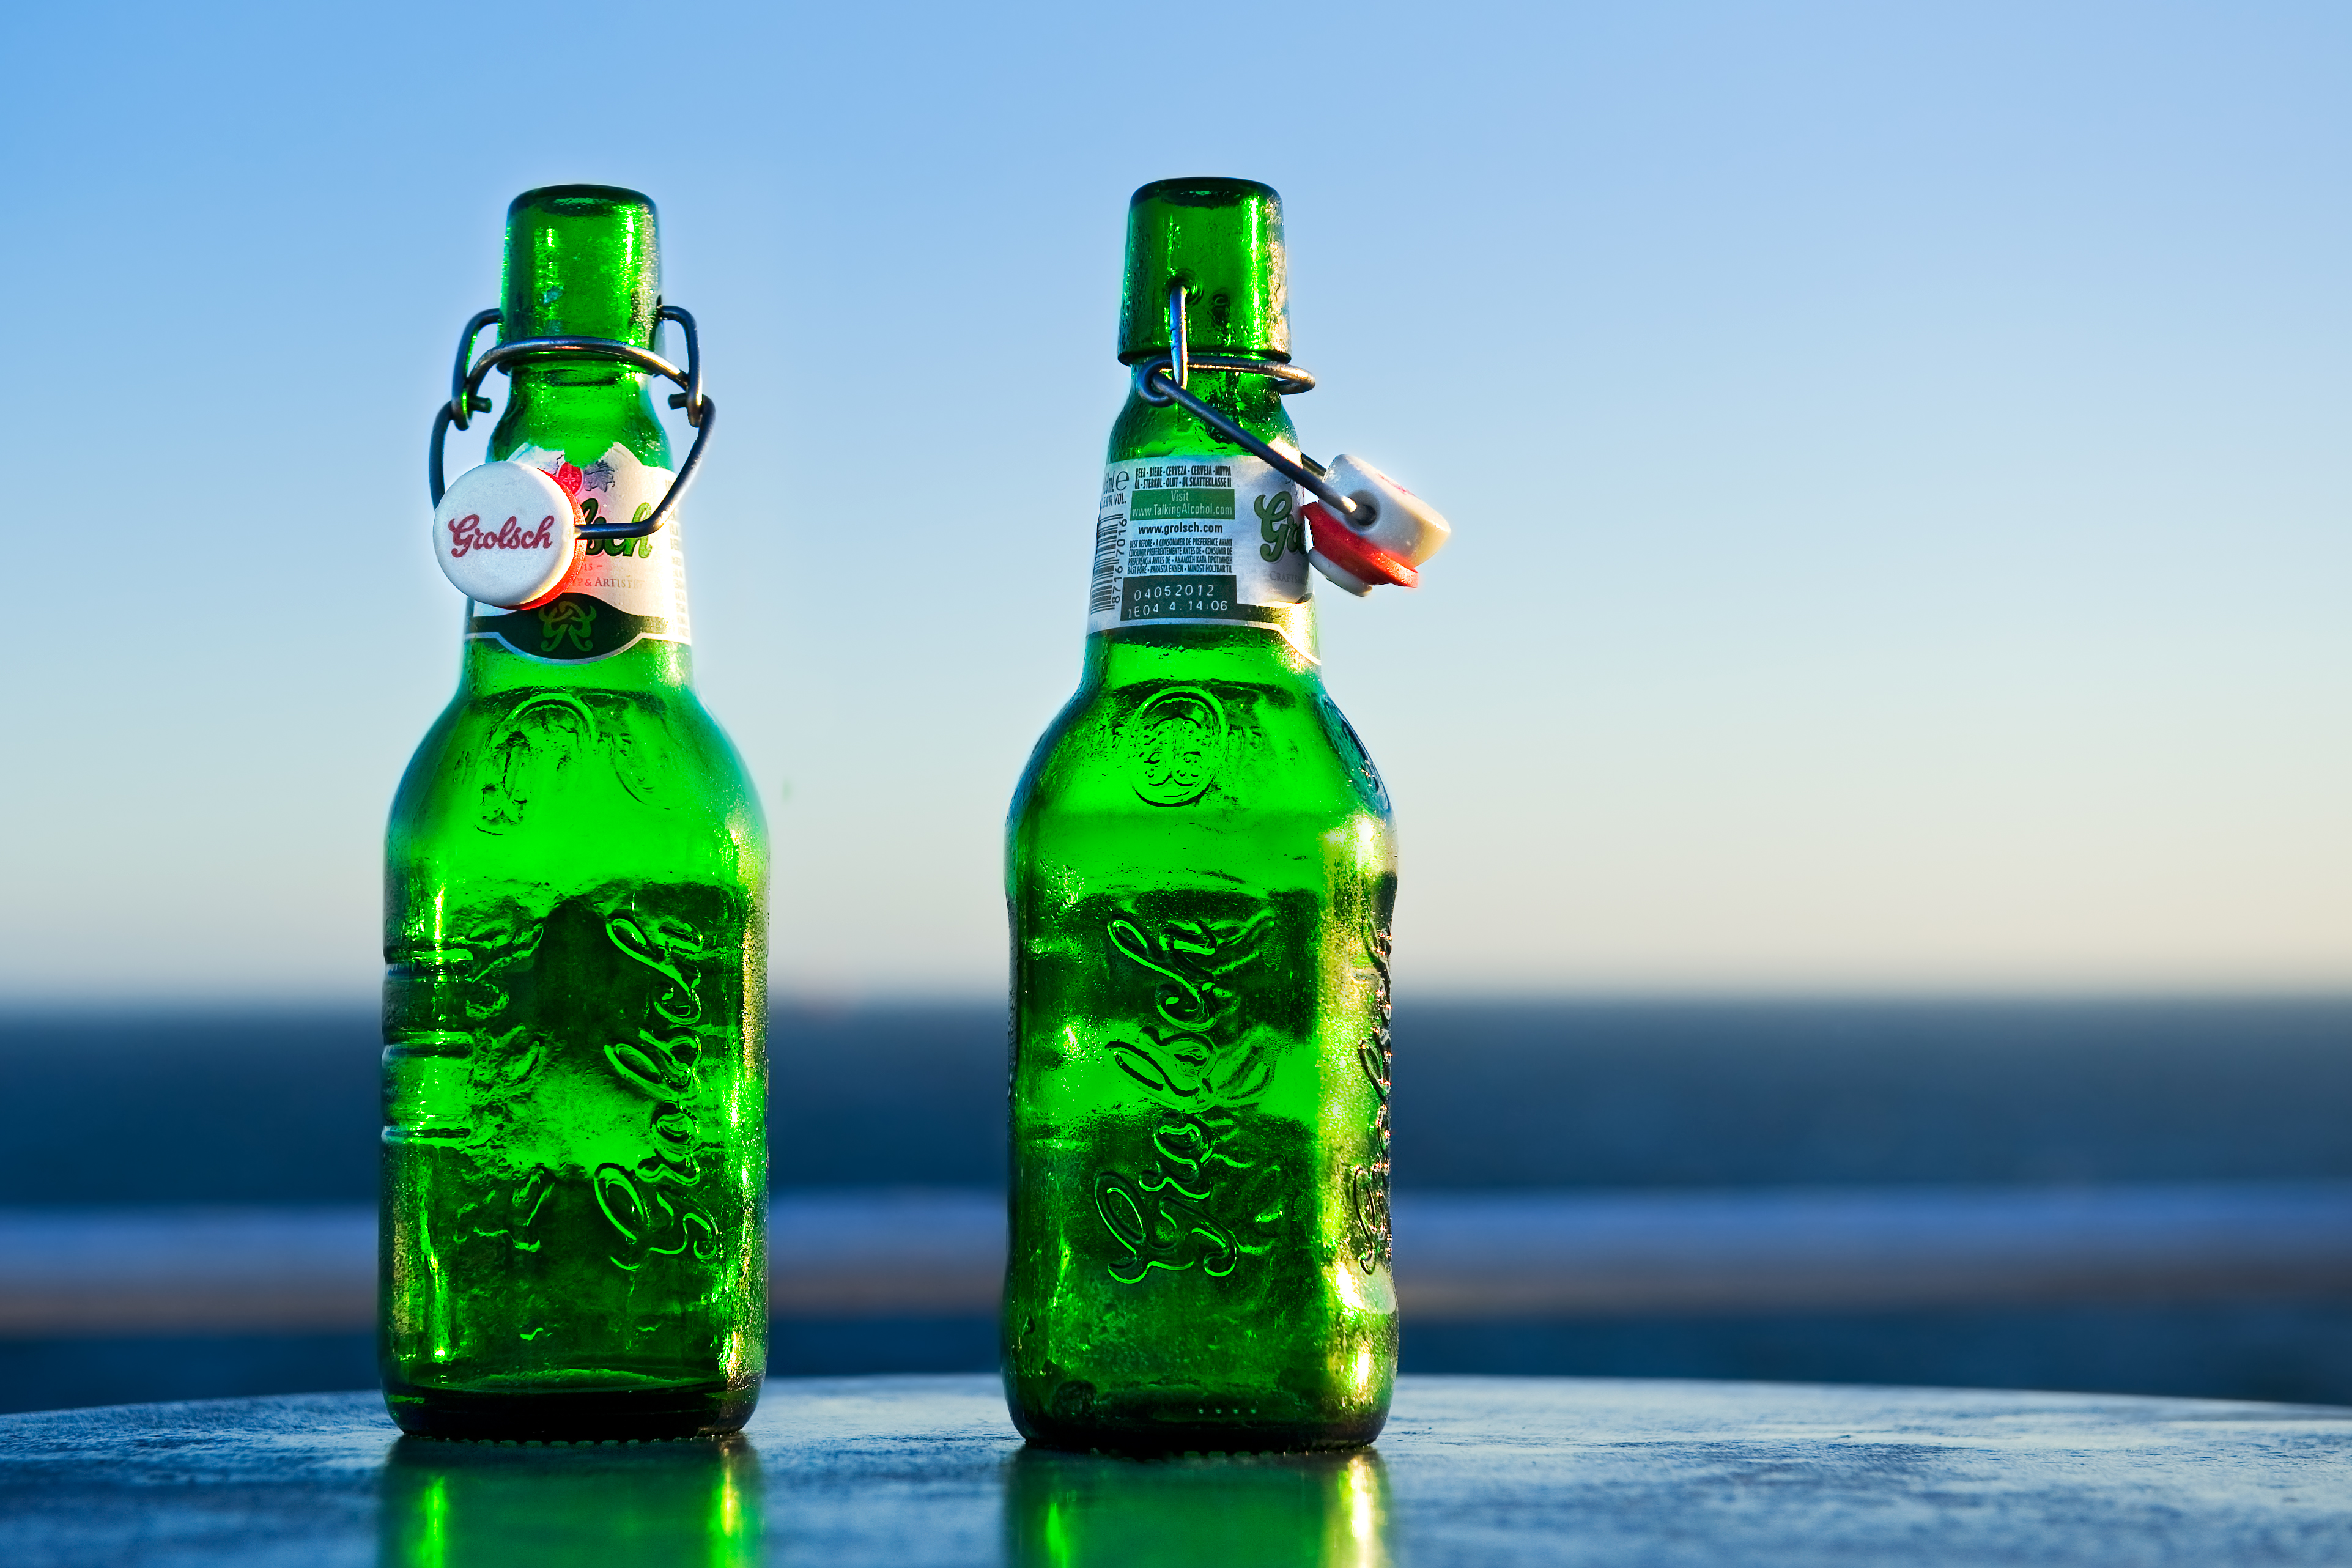 Grolsch_Beer_Bottles.jpg